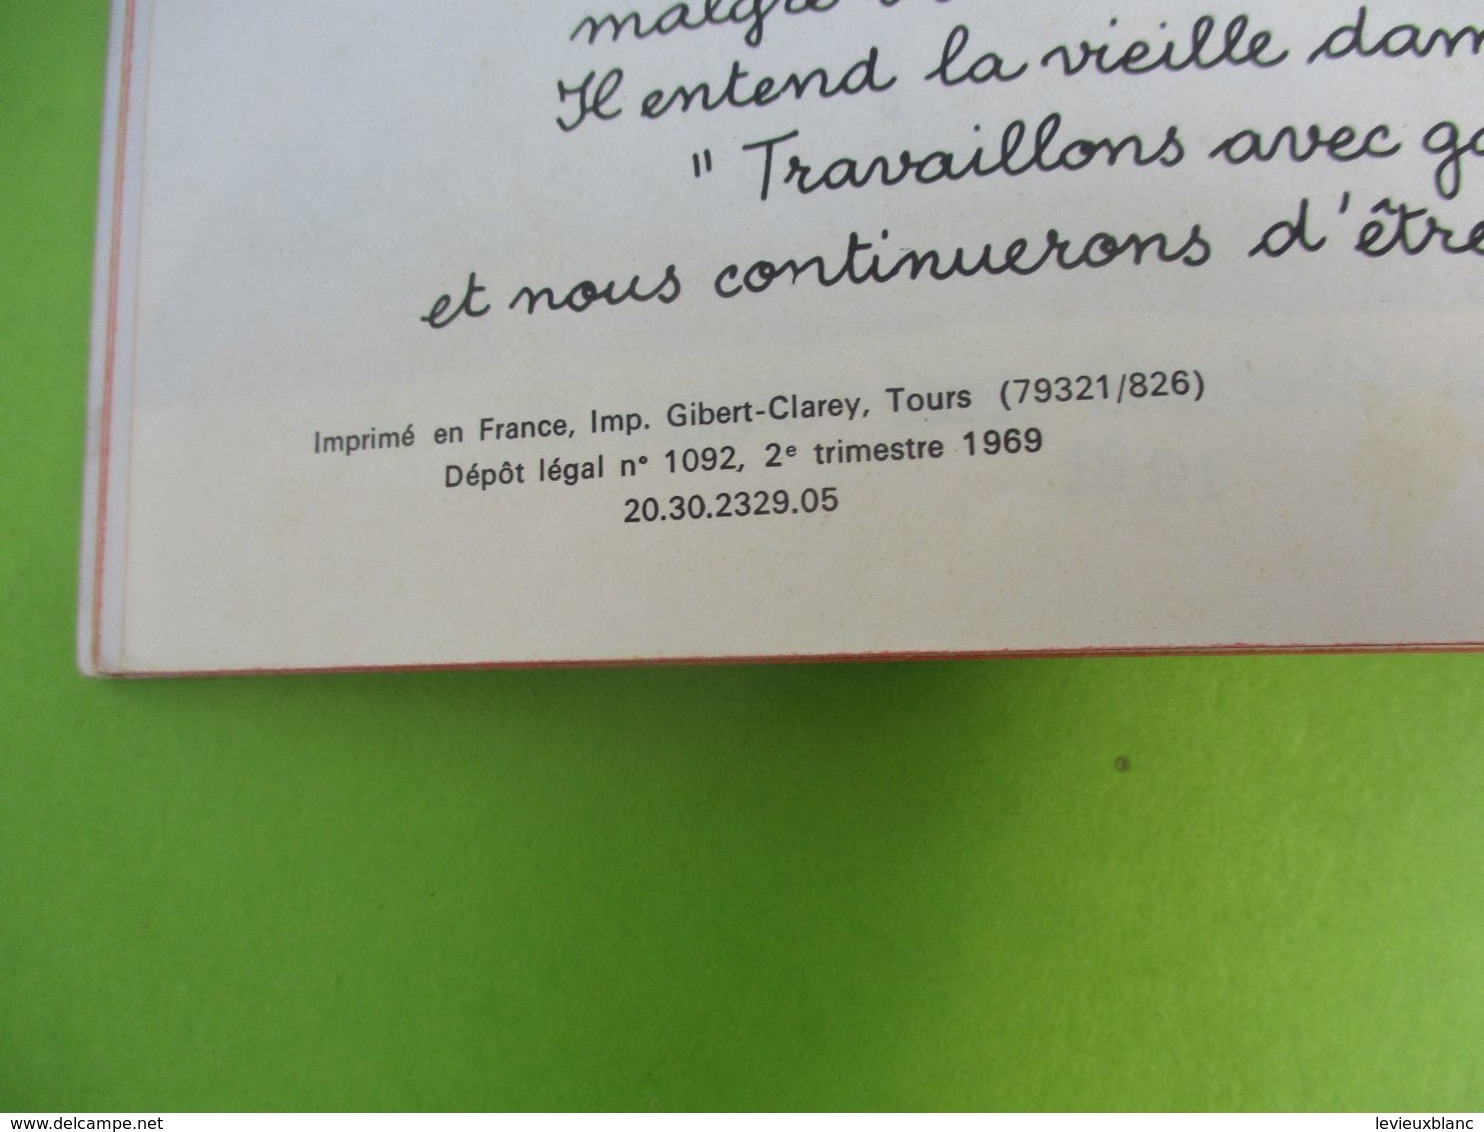 Les Albums roses/"Vive le Roi Babar" /Jean de Brunhoff/Imprimeur Gibert-Clarey/TOURS/1969   PLR8